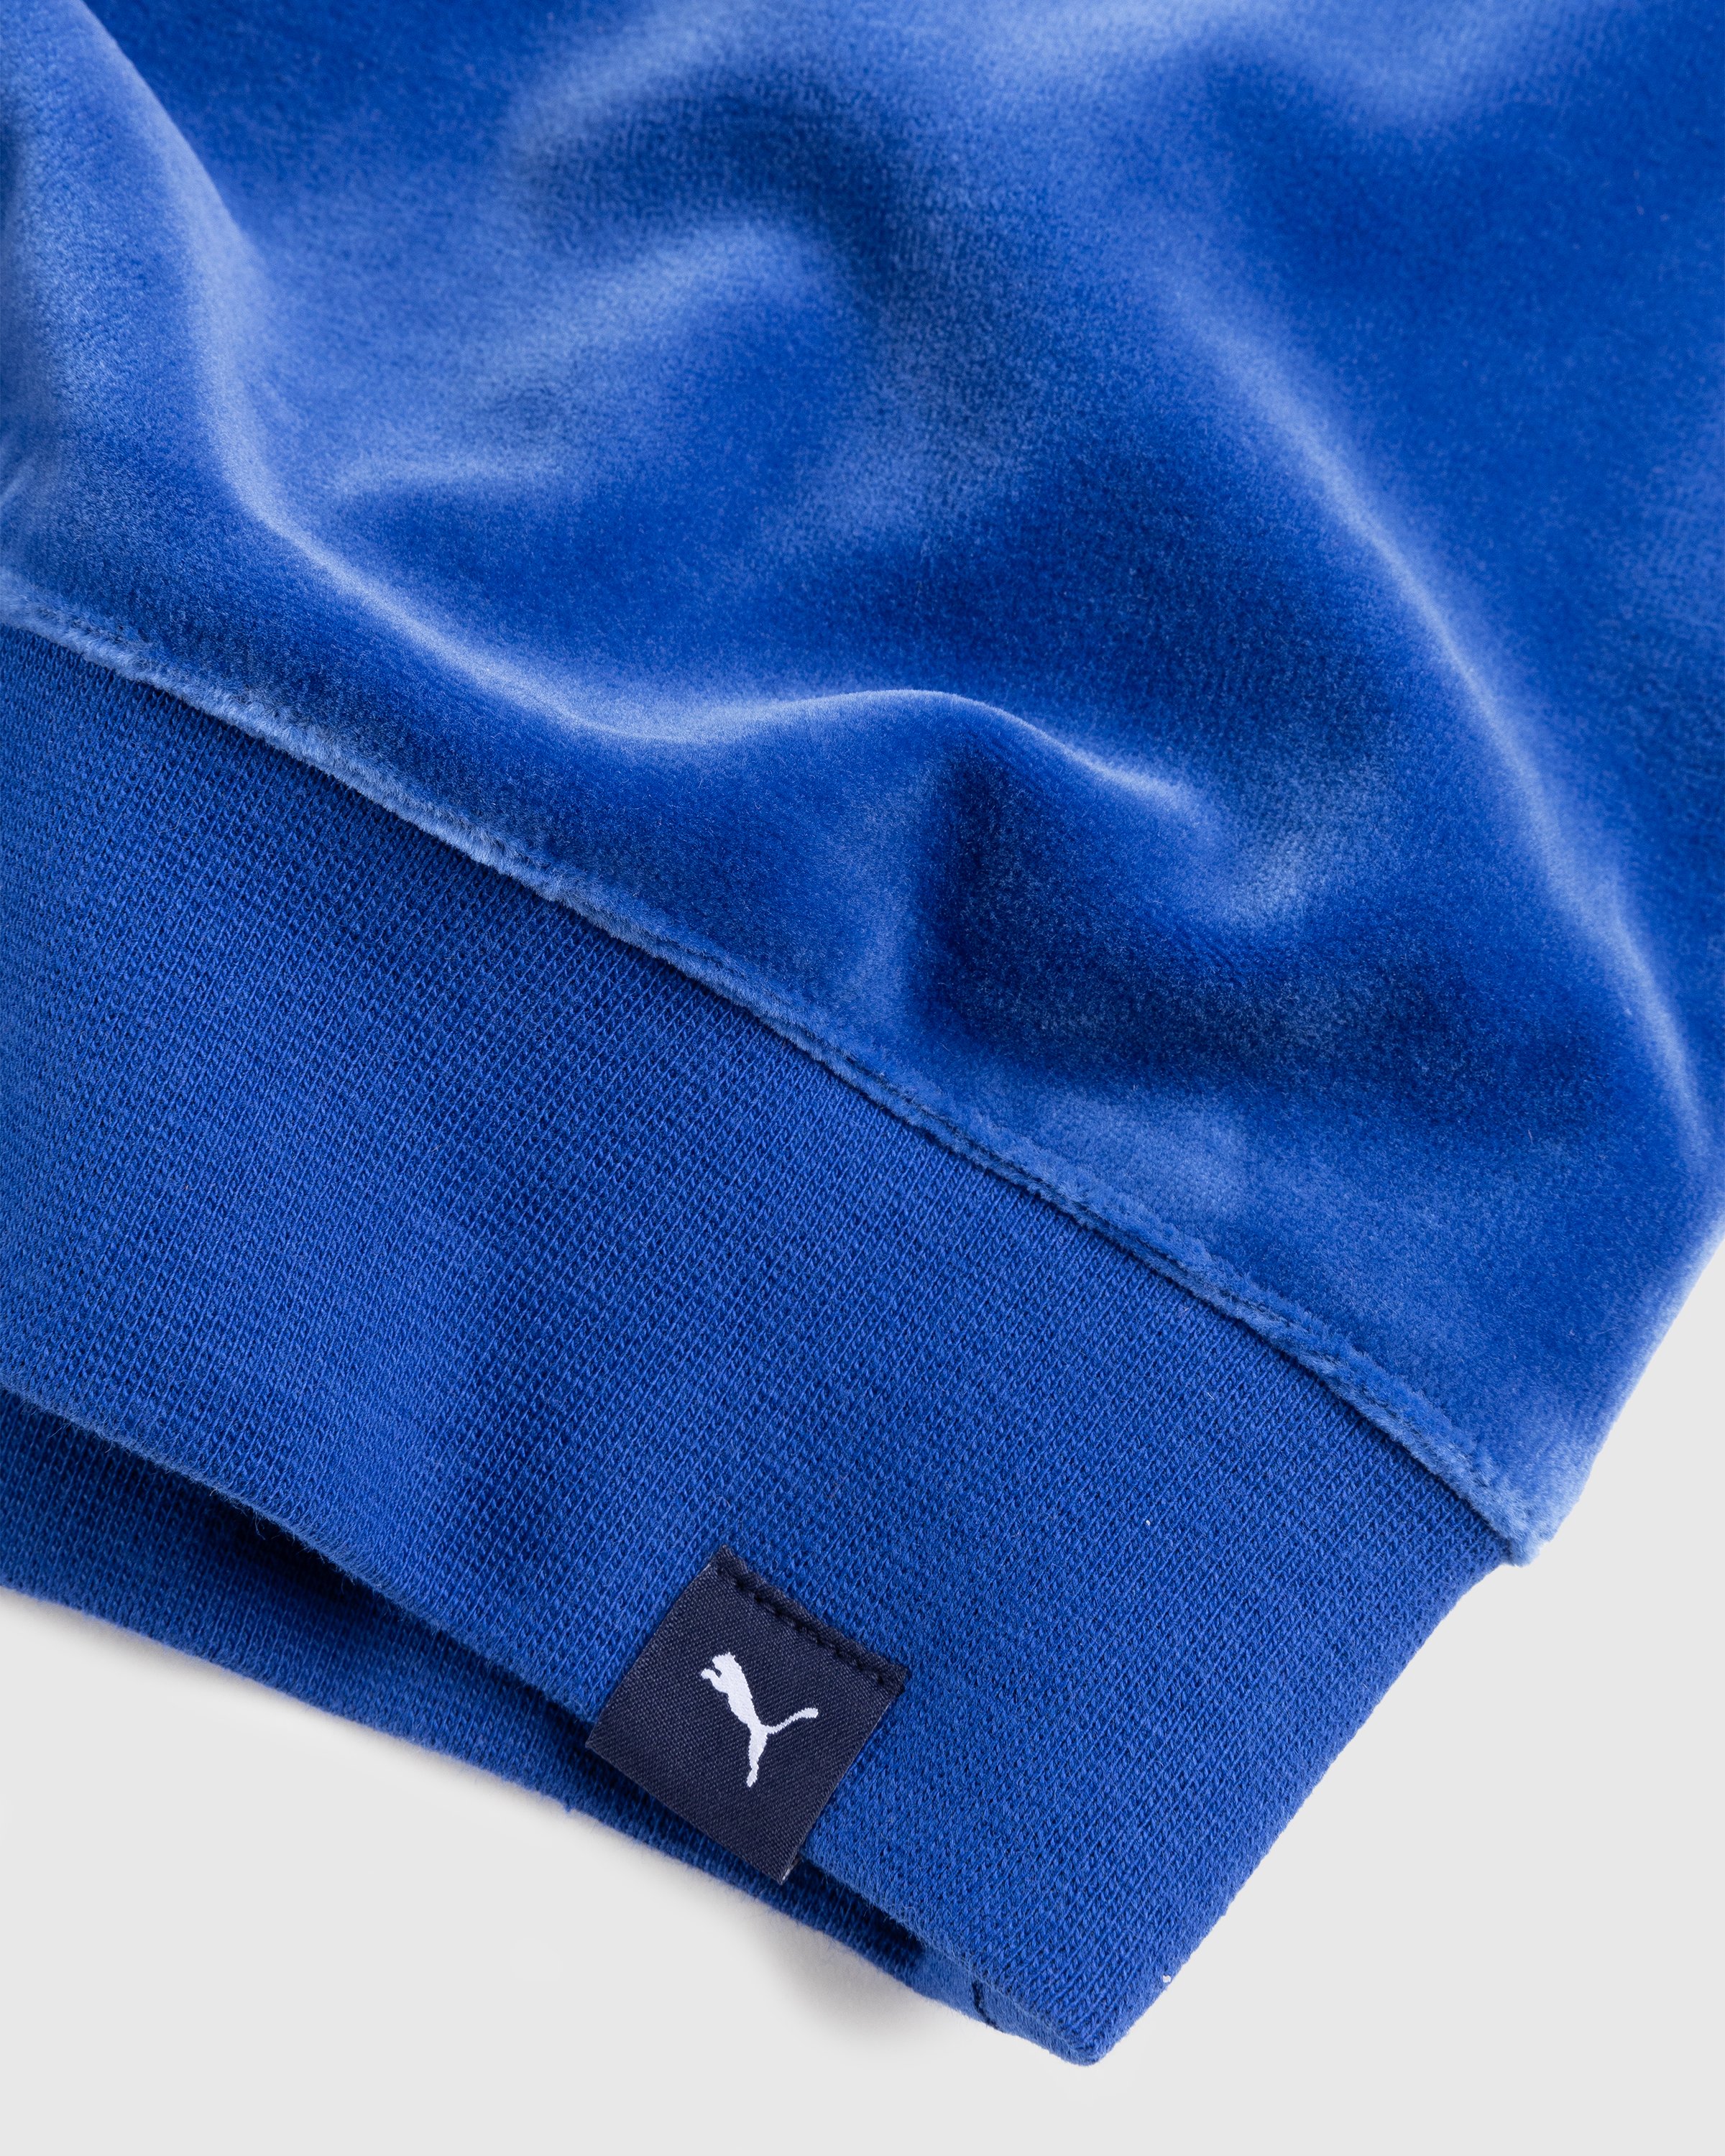 Puma x Noah - Vest Blue - Clothing - Blue - Image 5